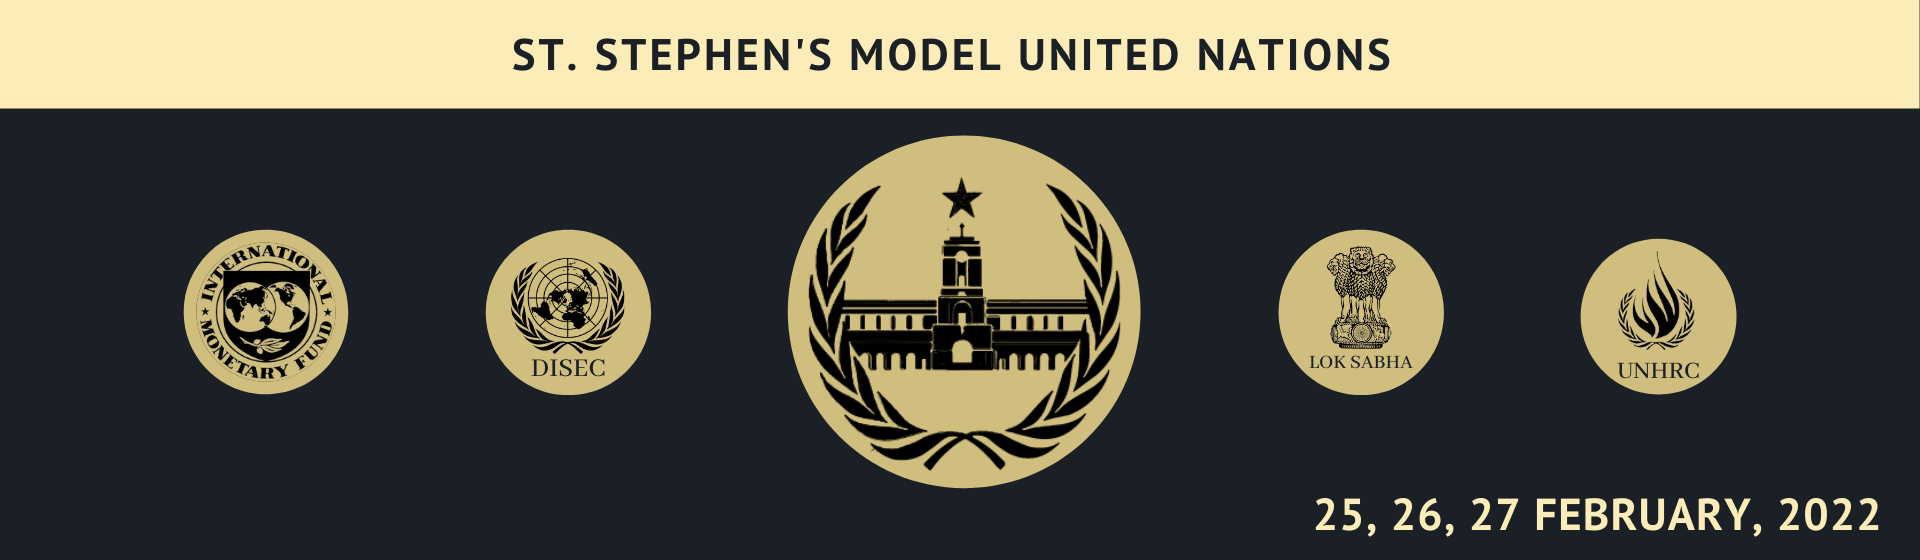 St. Stephen's Model United Nations 2022